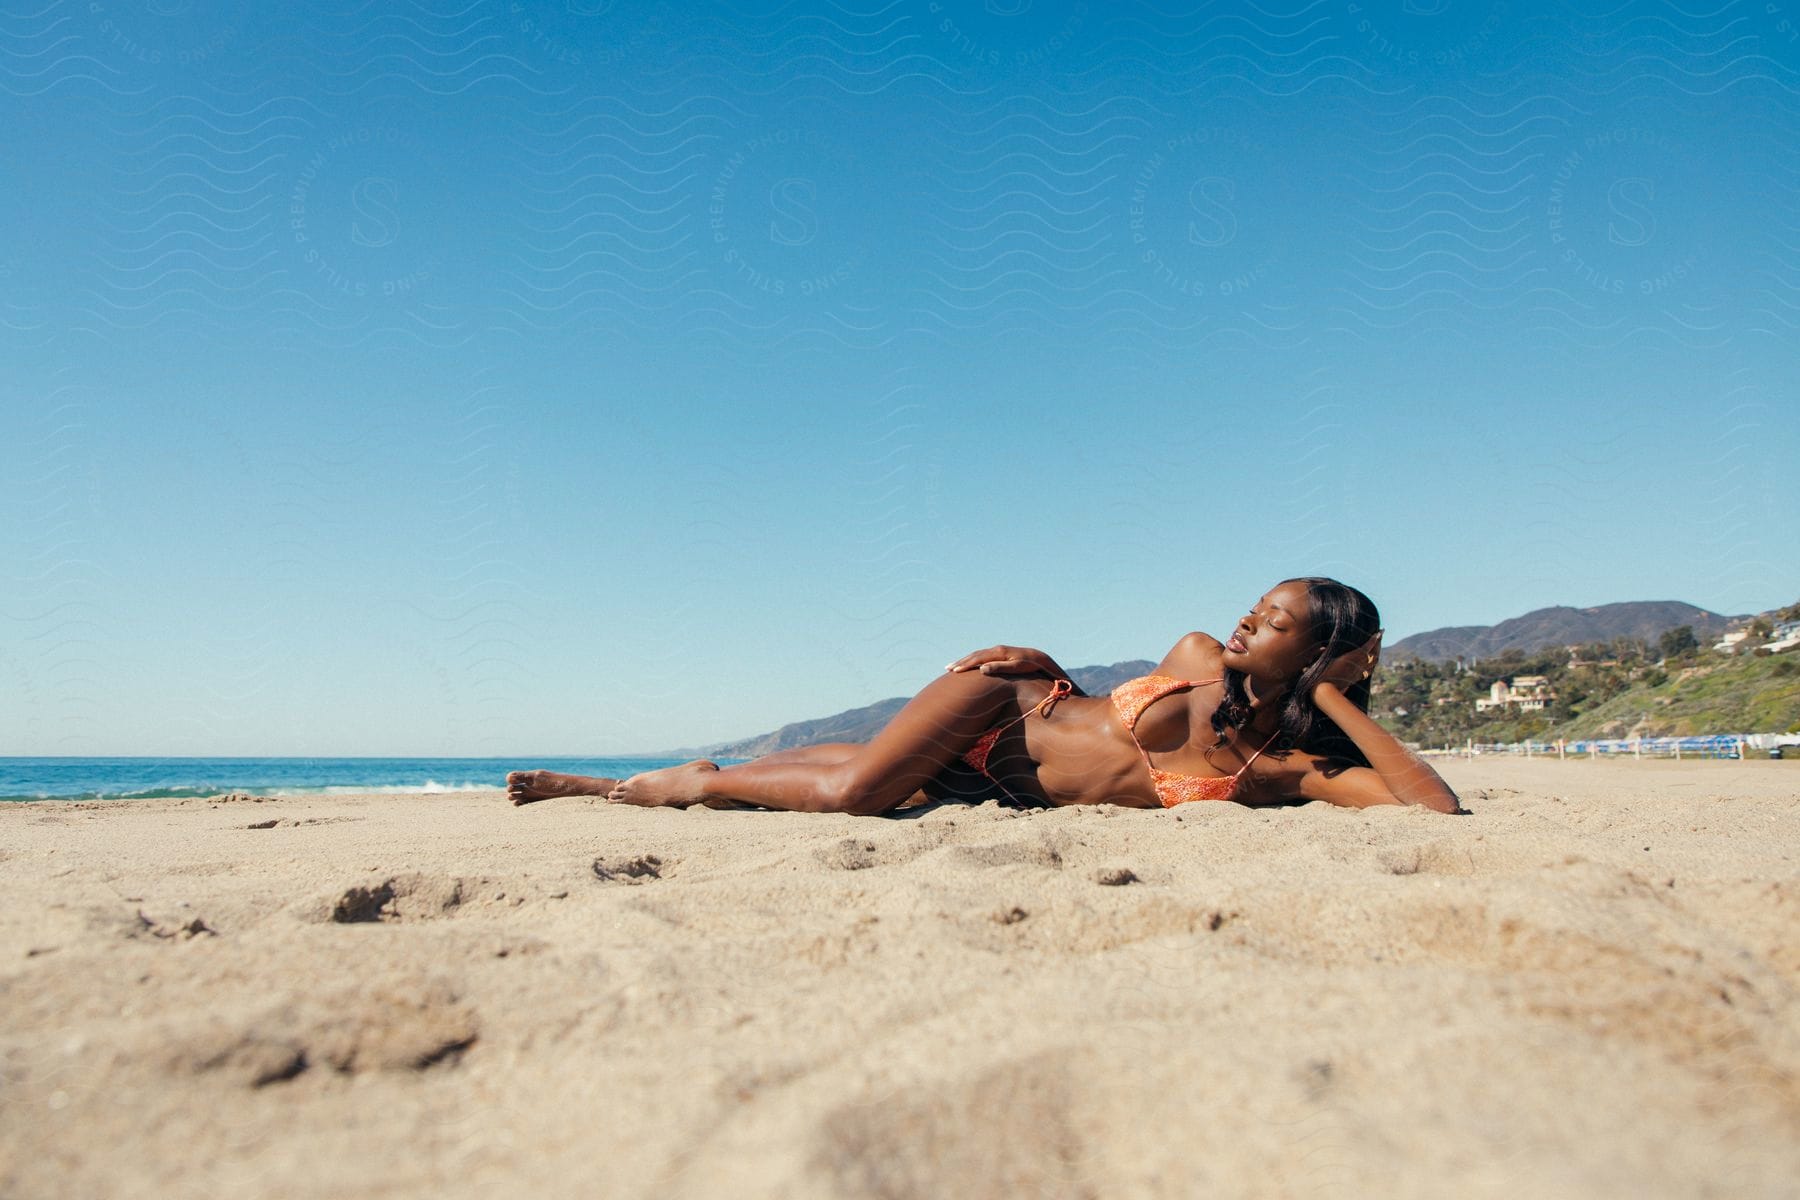 Woman lying in a bikini on the beach in the summer.